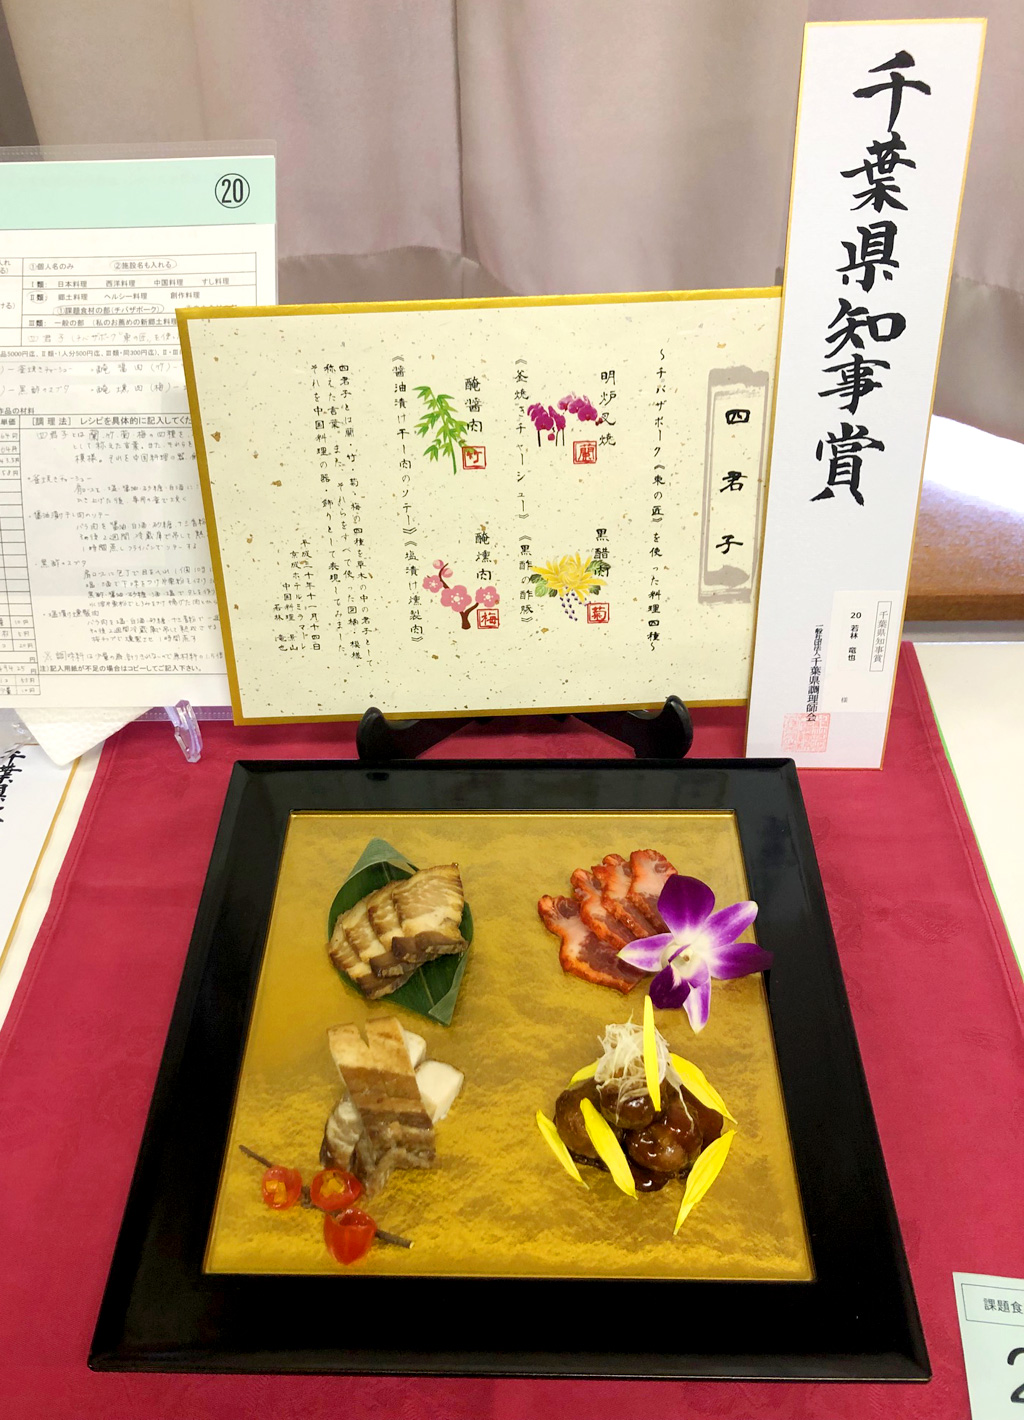 千葉県調理師会の料理コンクールにて 千葉県知事賞を受賞しました ホテルからのお知らせ 京成ホテルミラマーレ